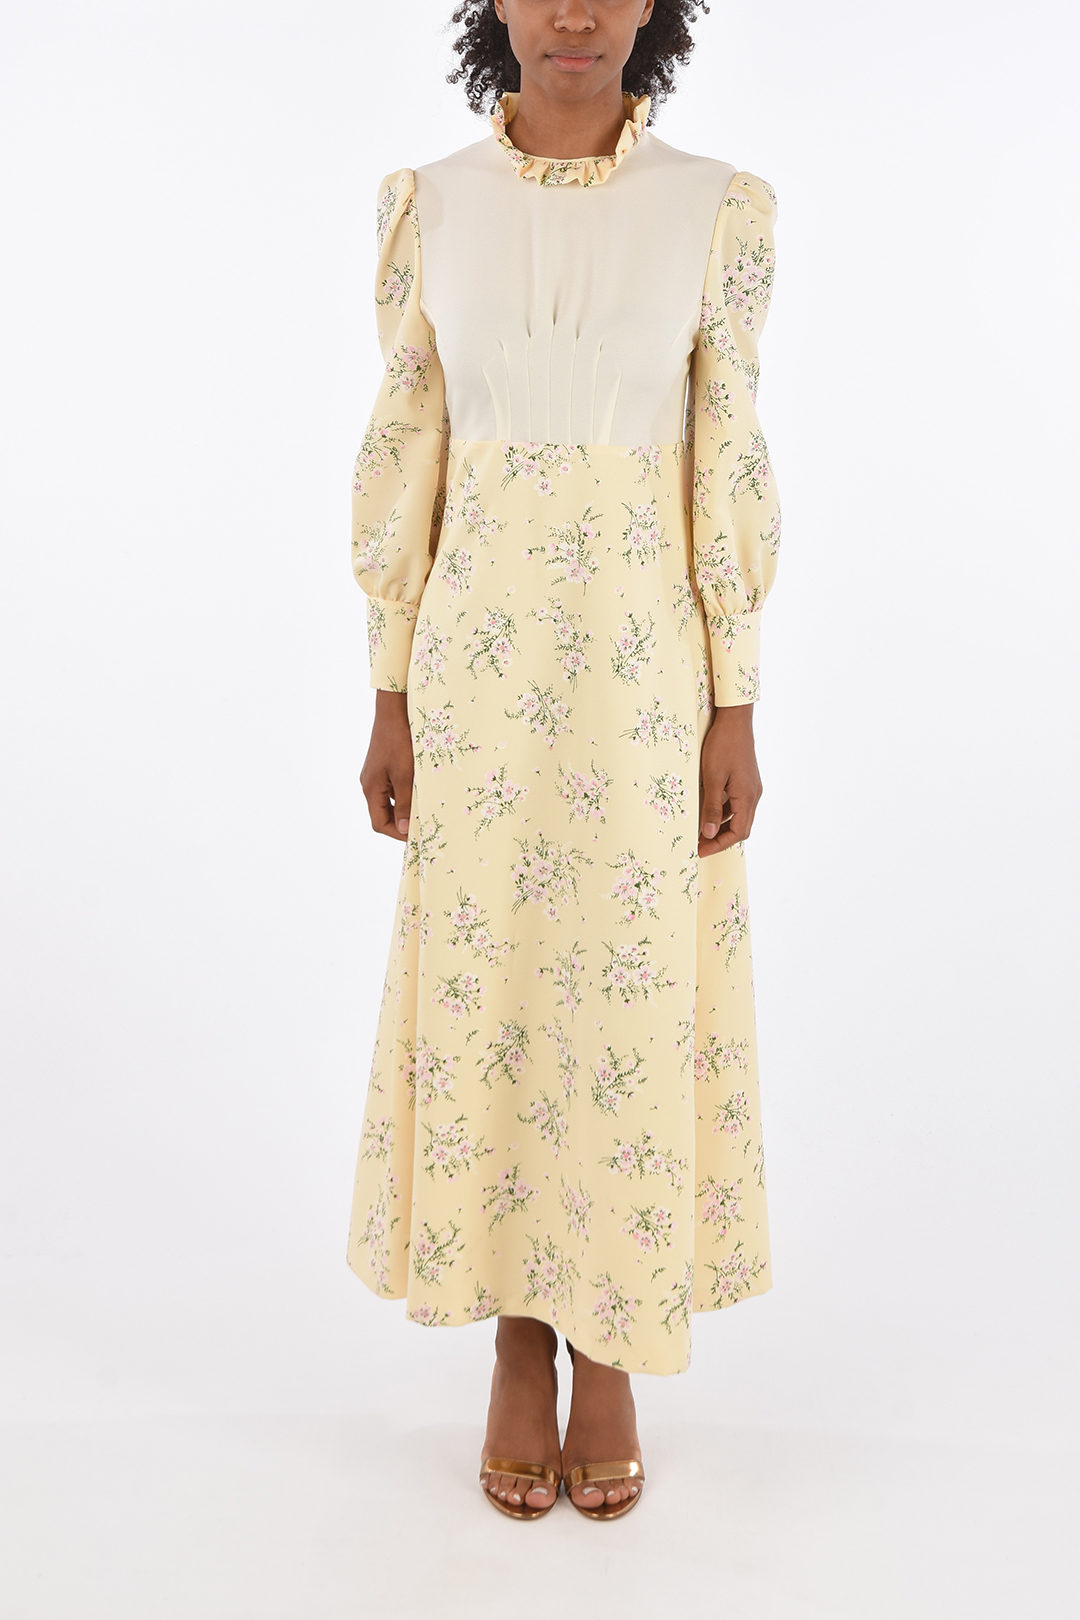 Miu Miu floral-print maxi dress with ...